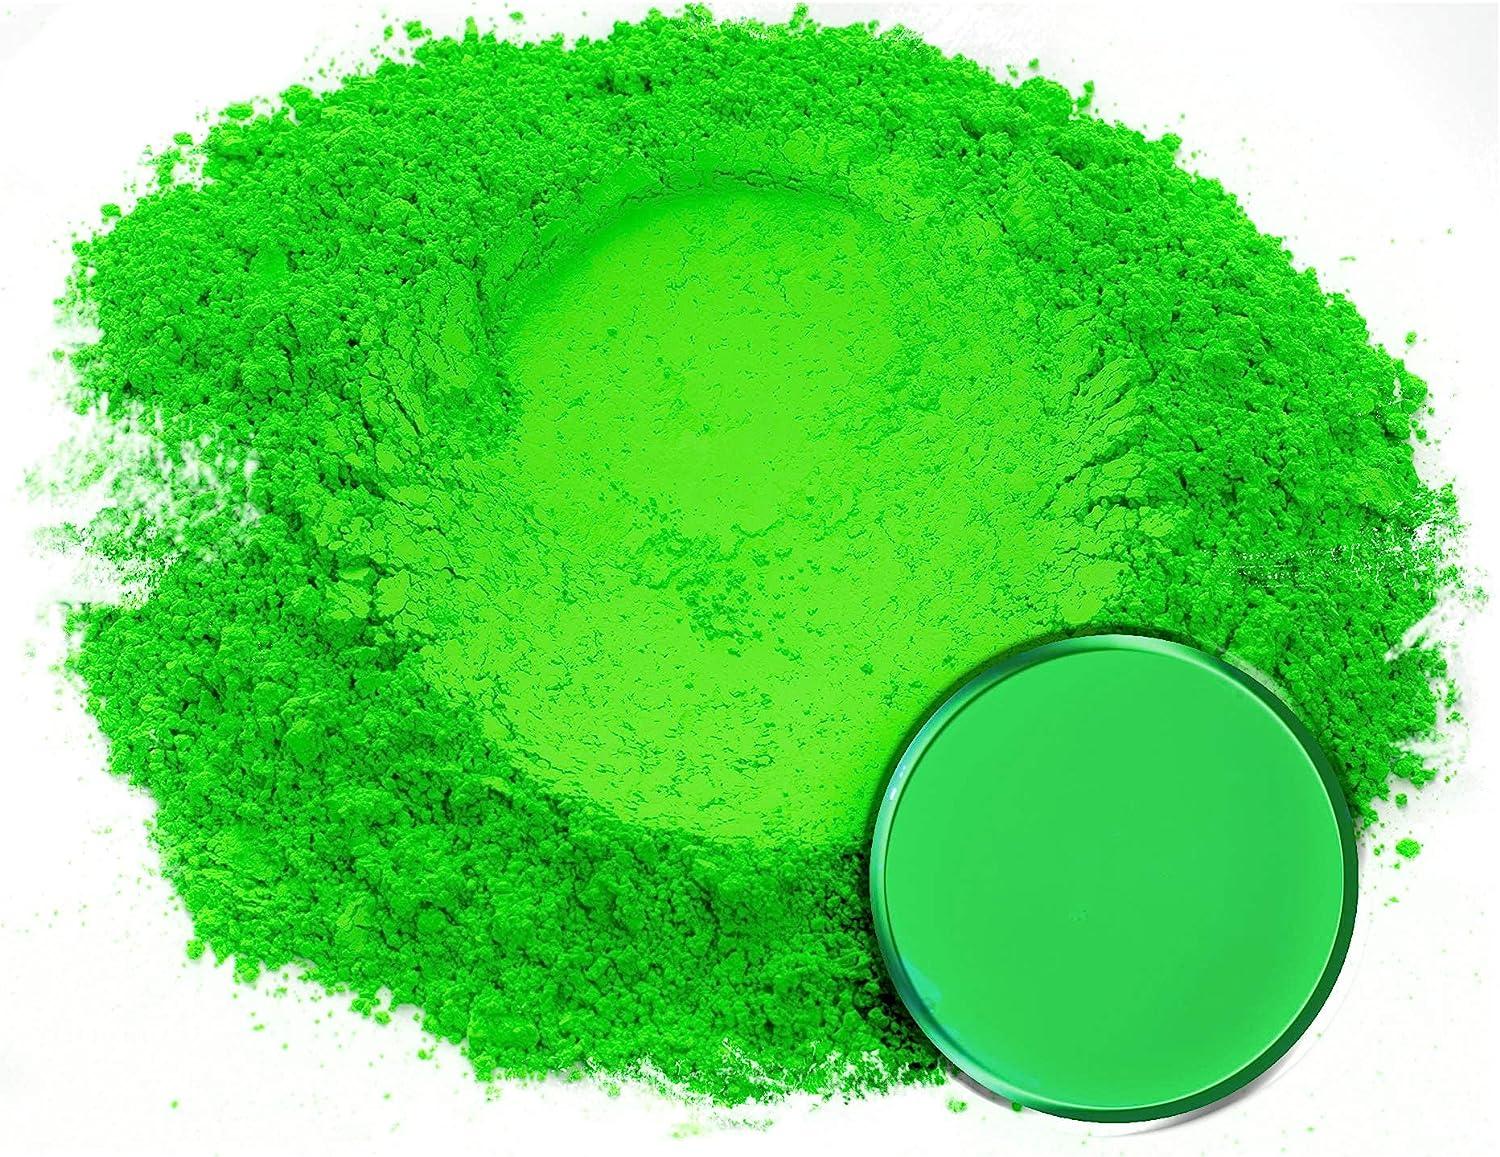 Eye Candy Premium Mica Powder - Neon Pigment, Colorant for Epoxy